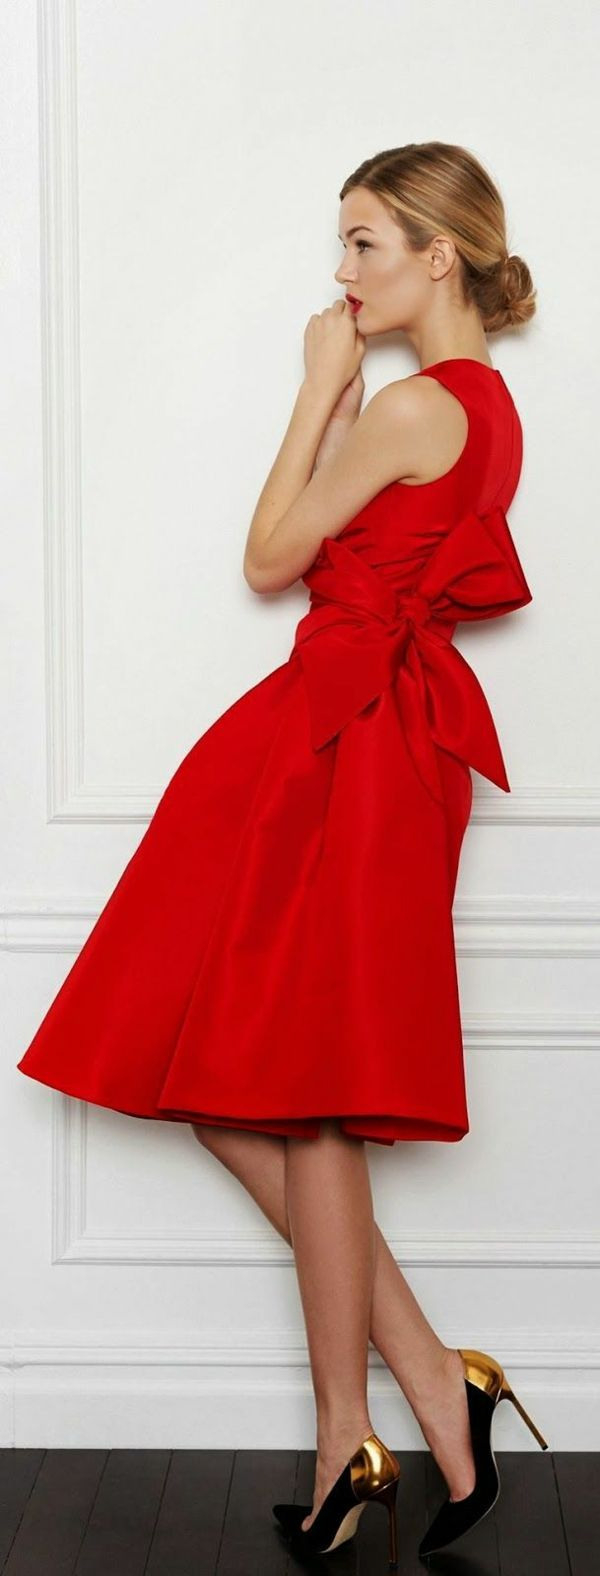 Rotes Kleid Kaufen: Welche Frauen Tragen Gern Rot? | Rotes